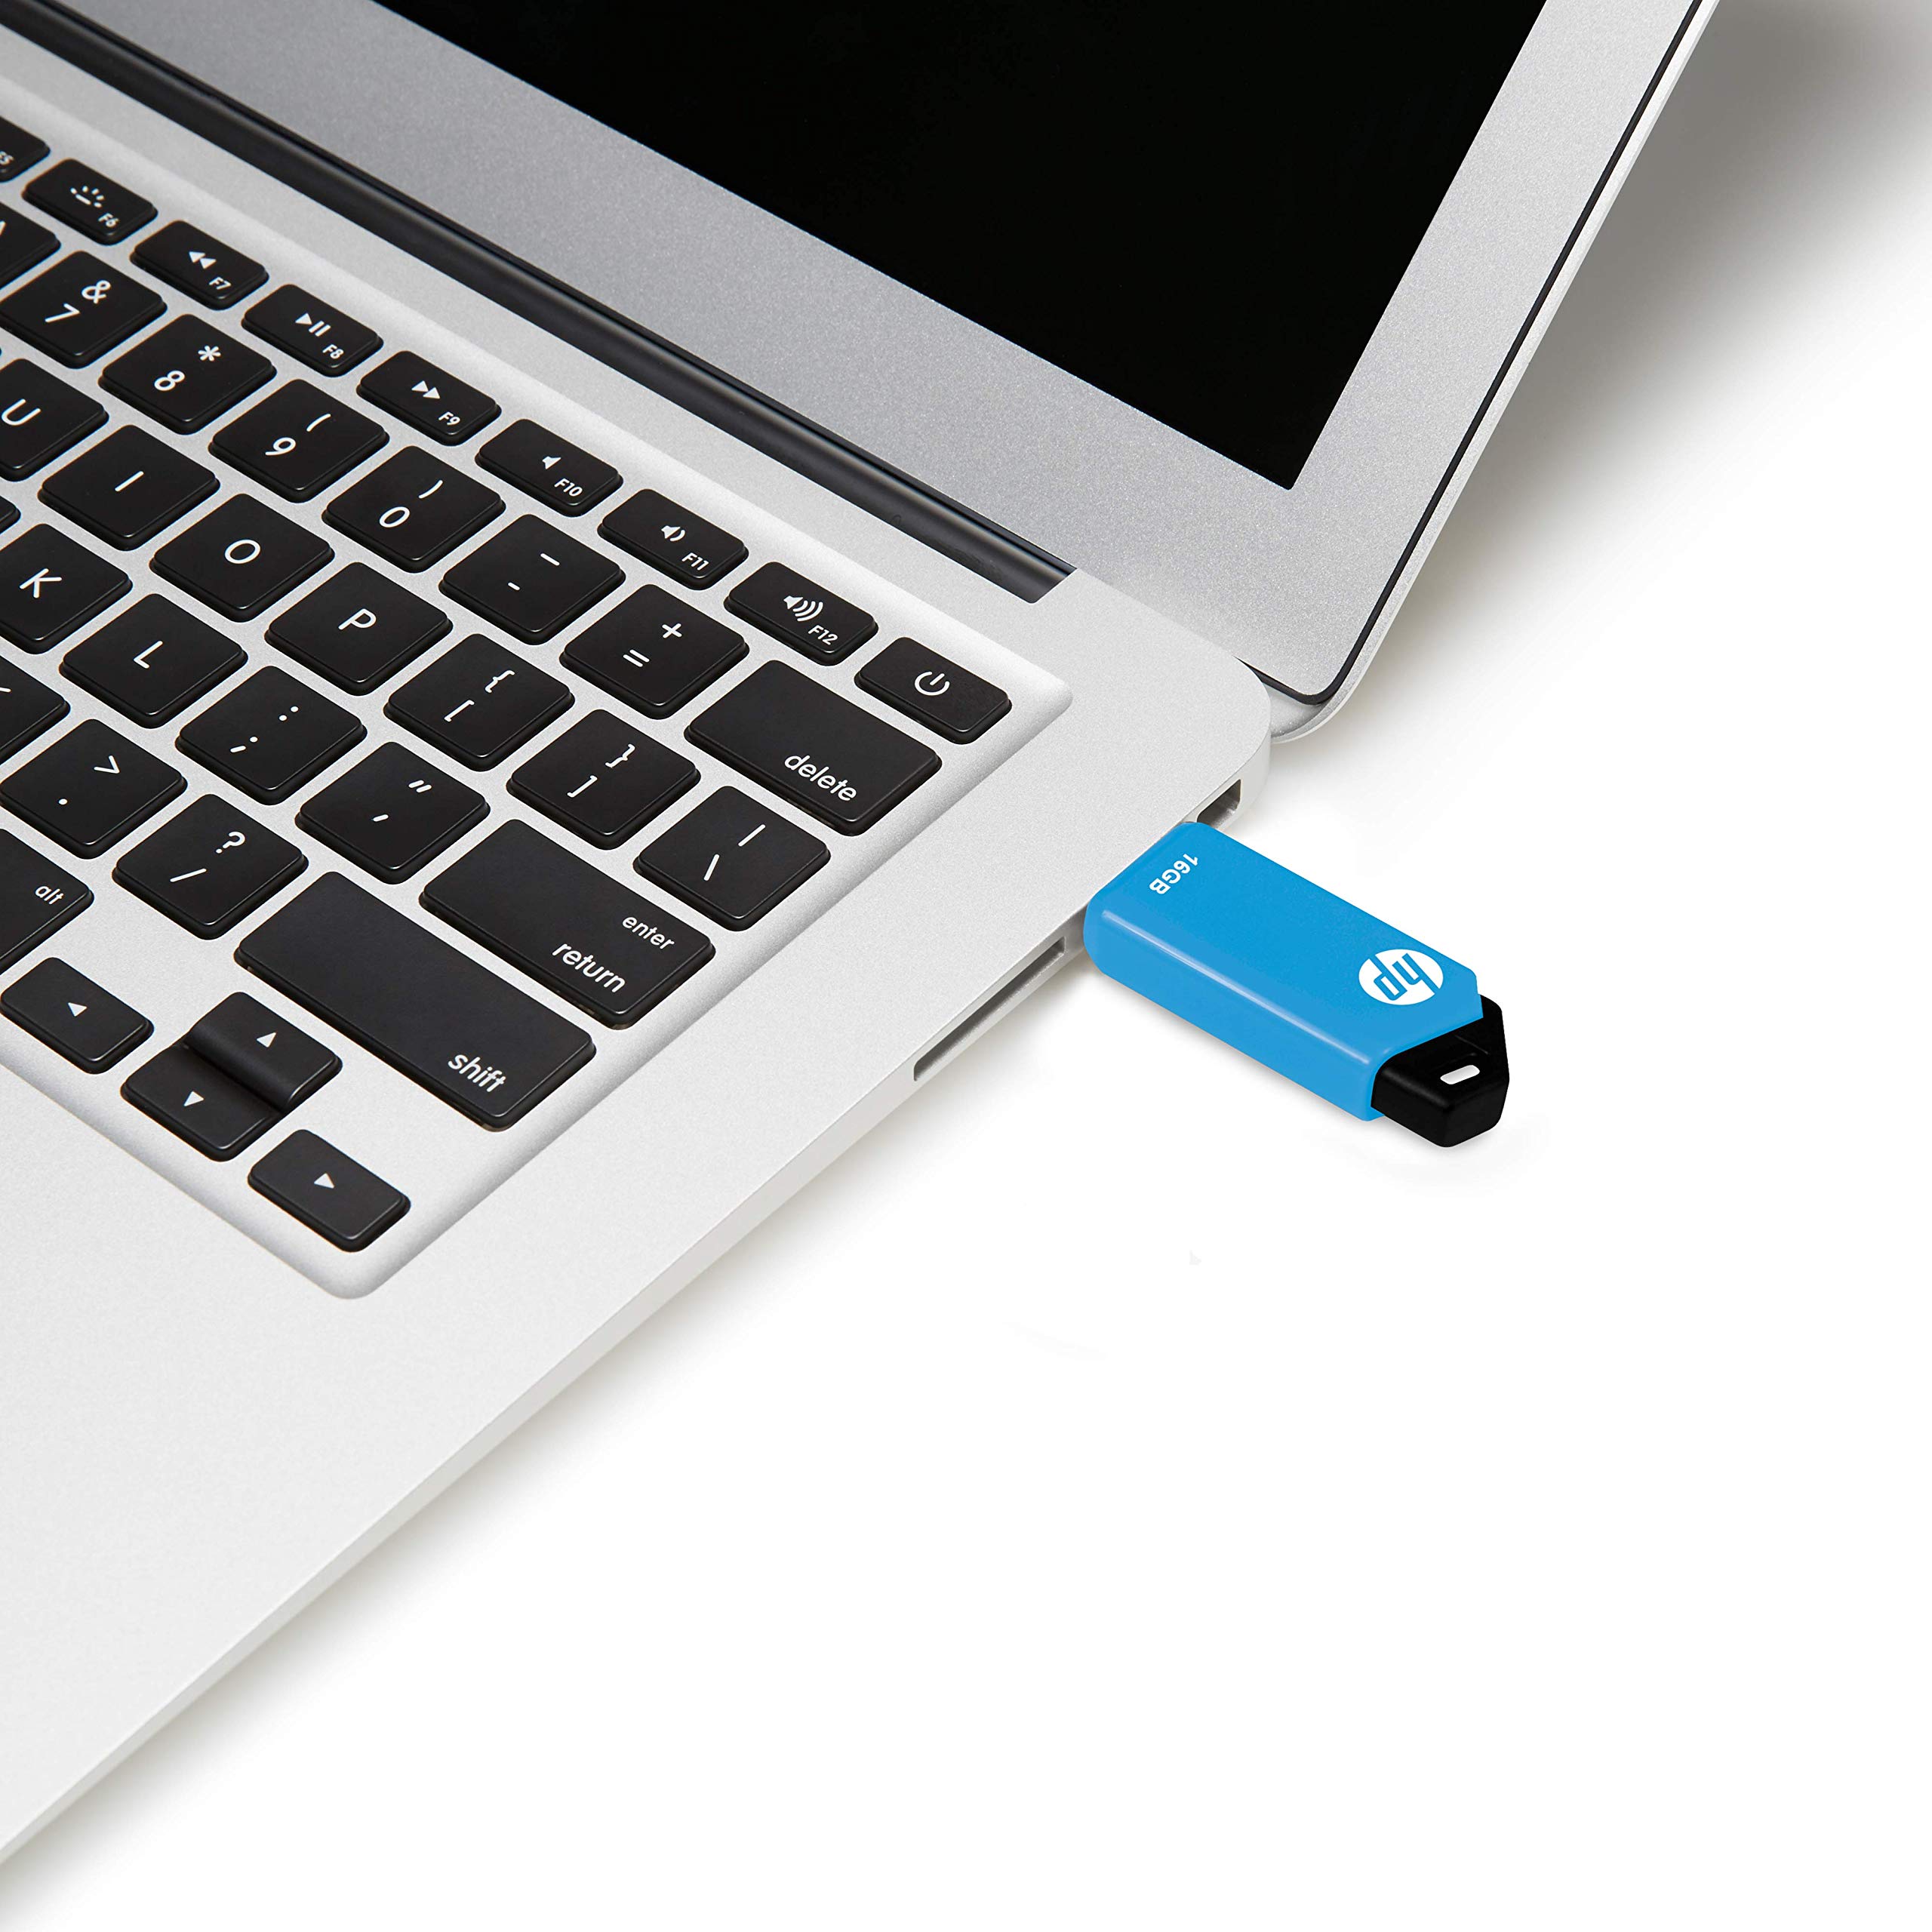 HP 16GB v150w USB 2.0 Flash Drive, Blue